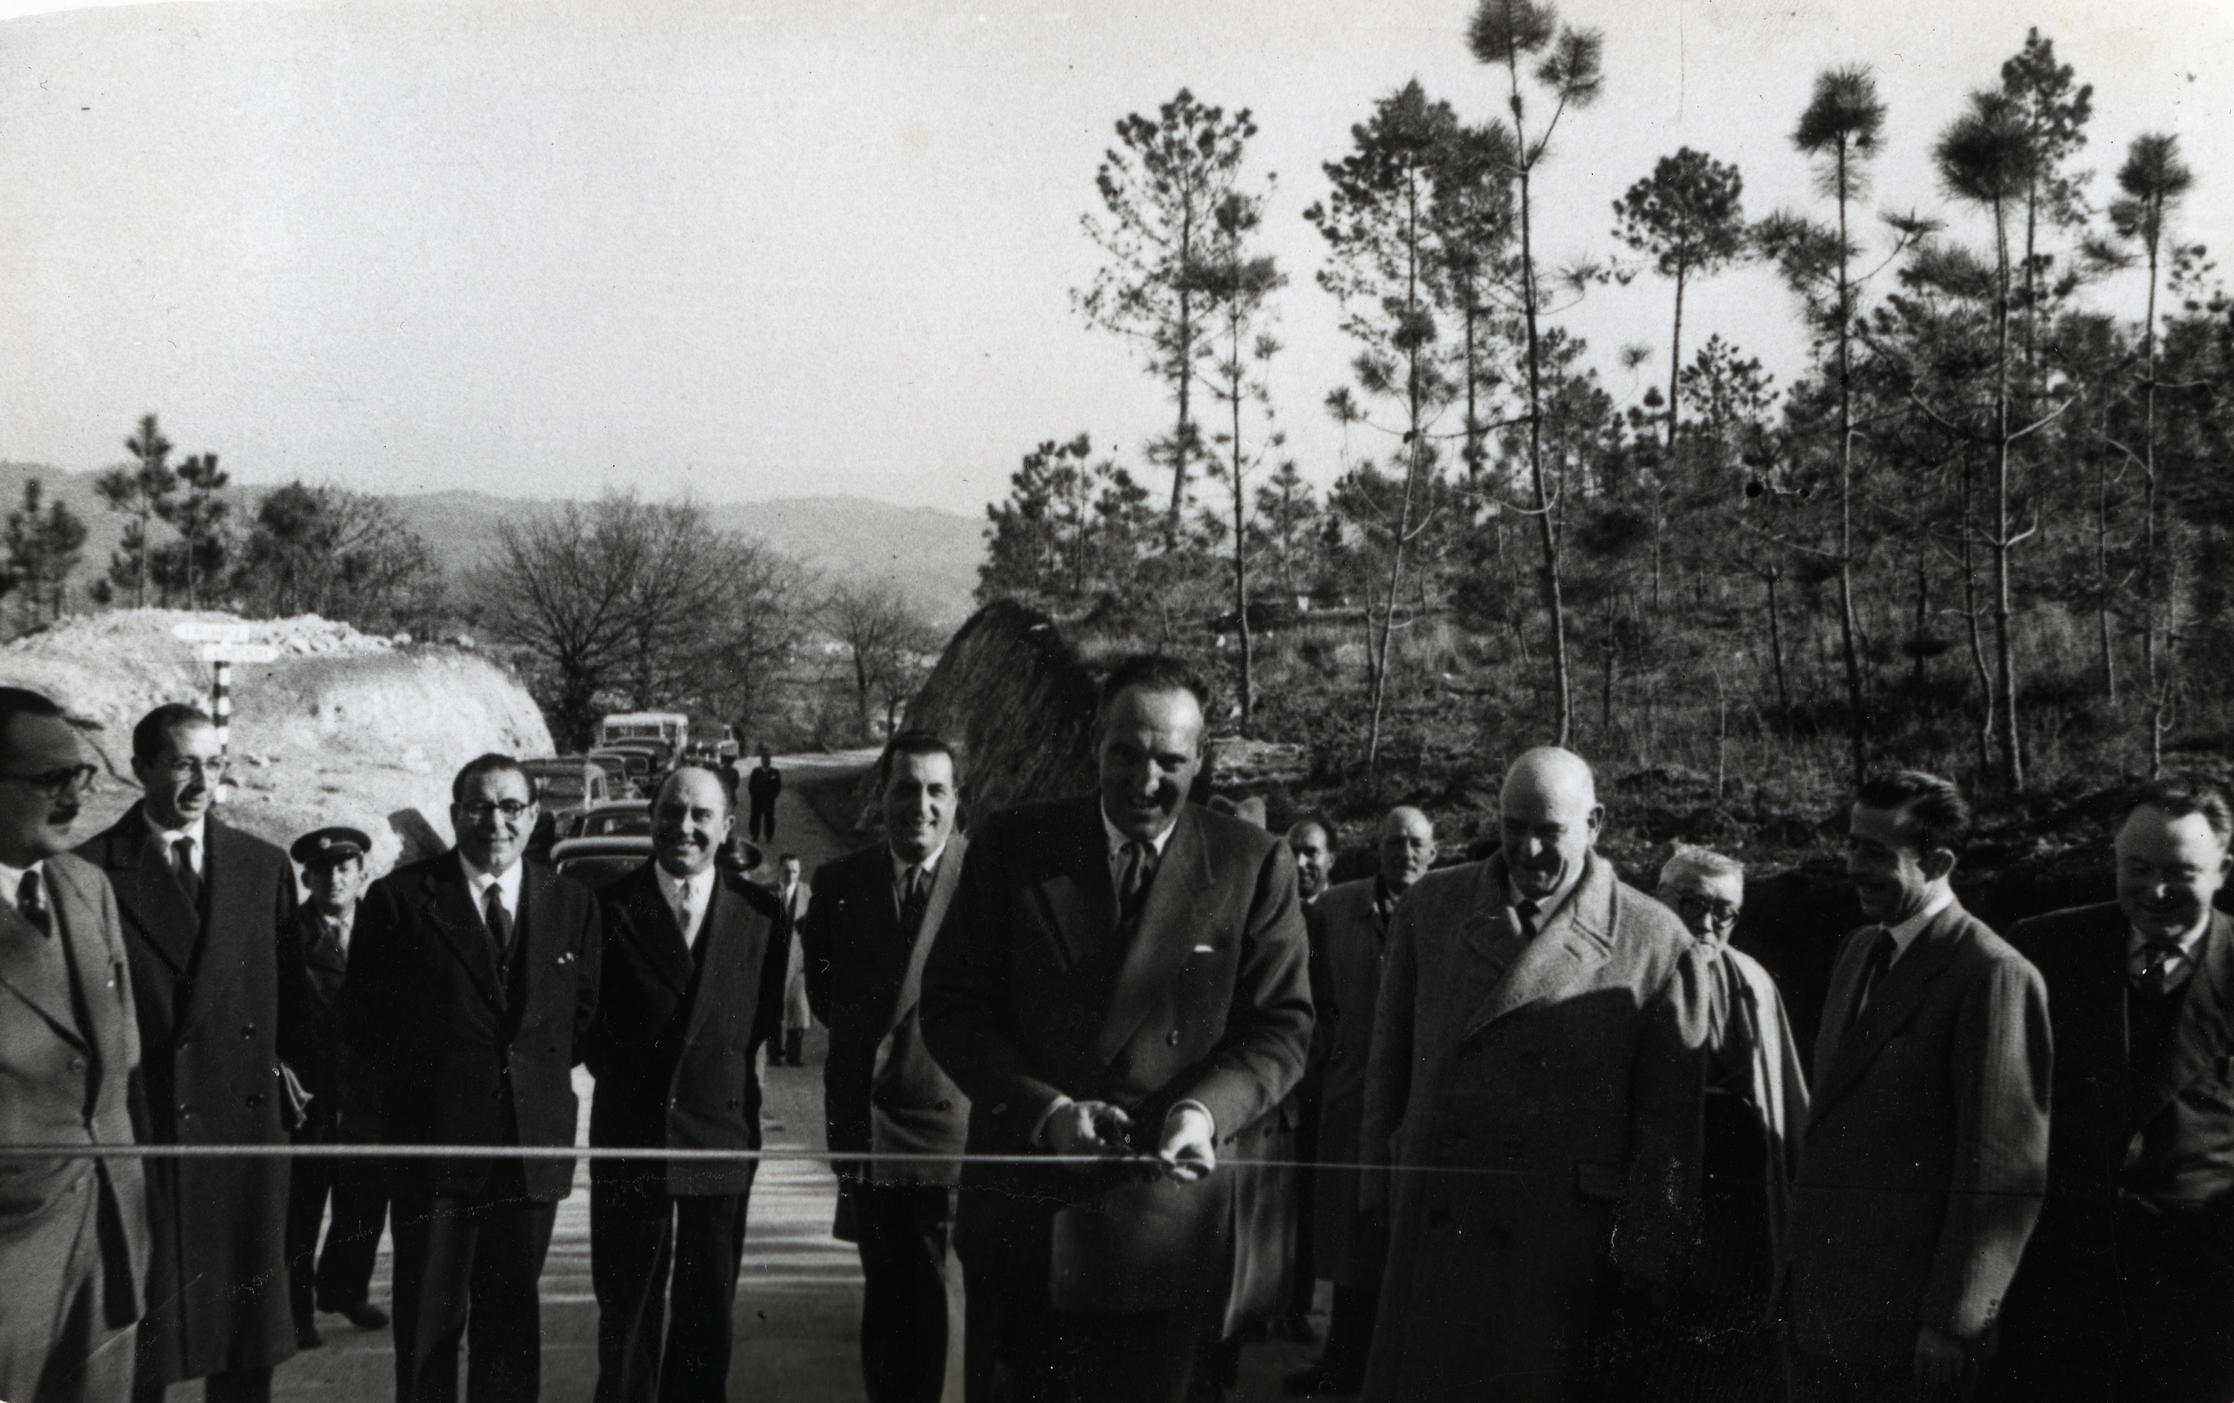 Acto de inauguración da estrada forestal no monte Castrove, 1956